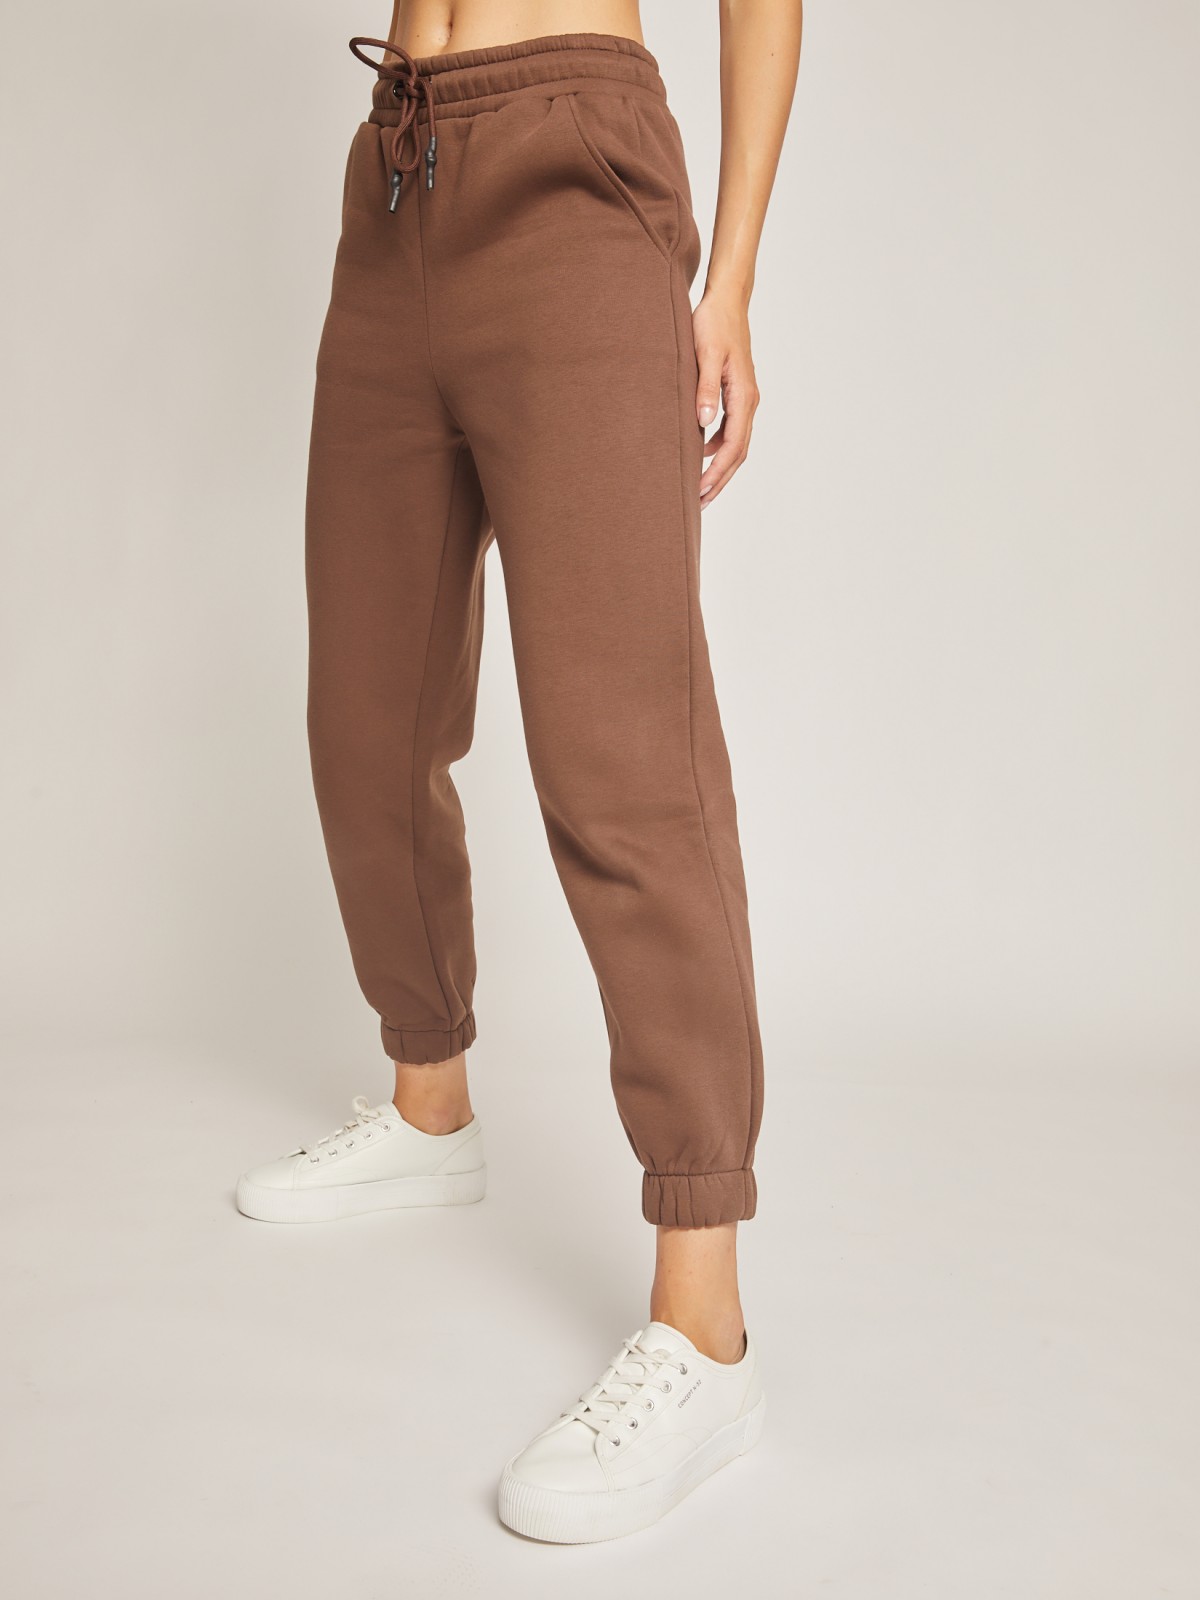 Утеплённые брюки-джоггеры zolla 02142731Y091, цвет коричневый, размер XS - фото 2